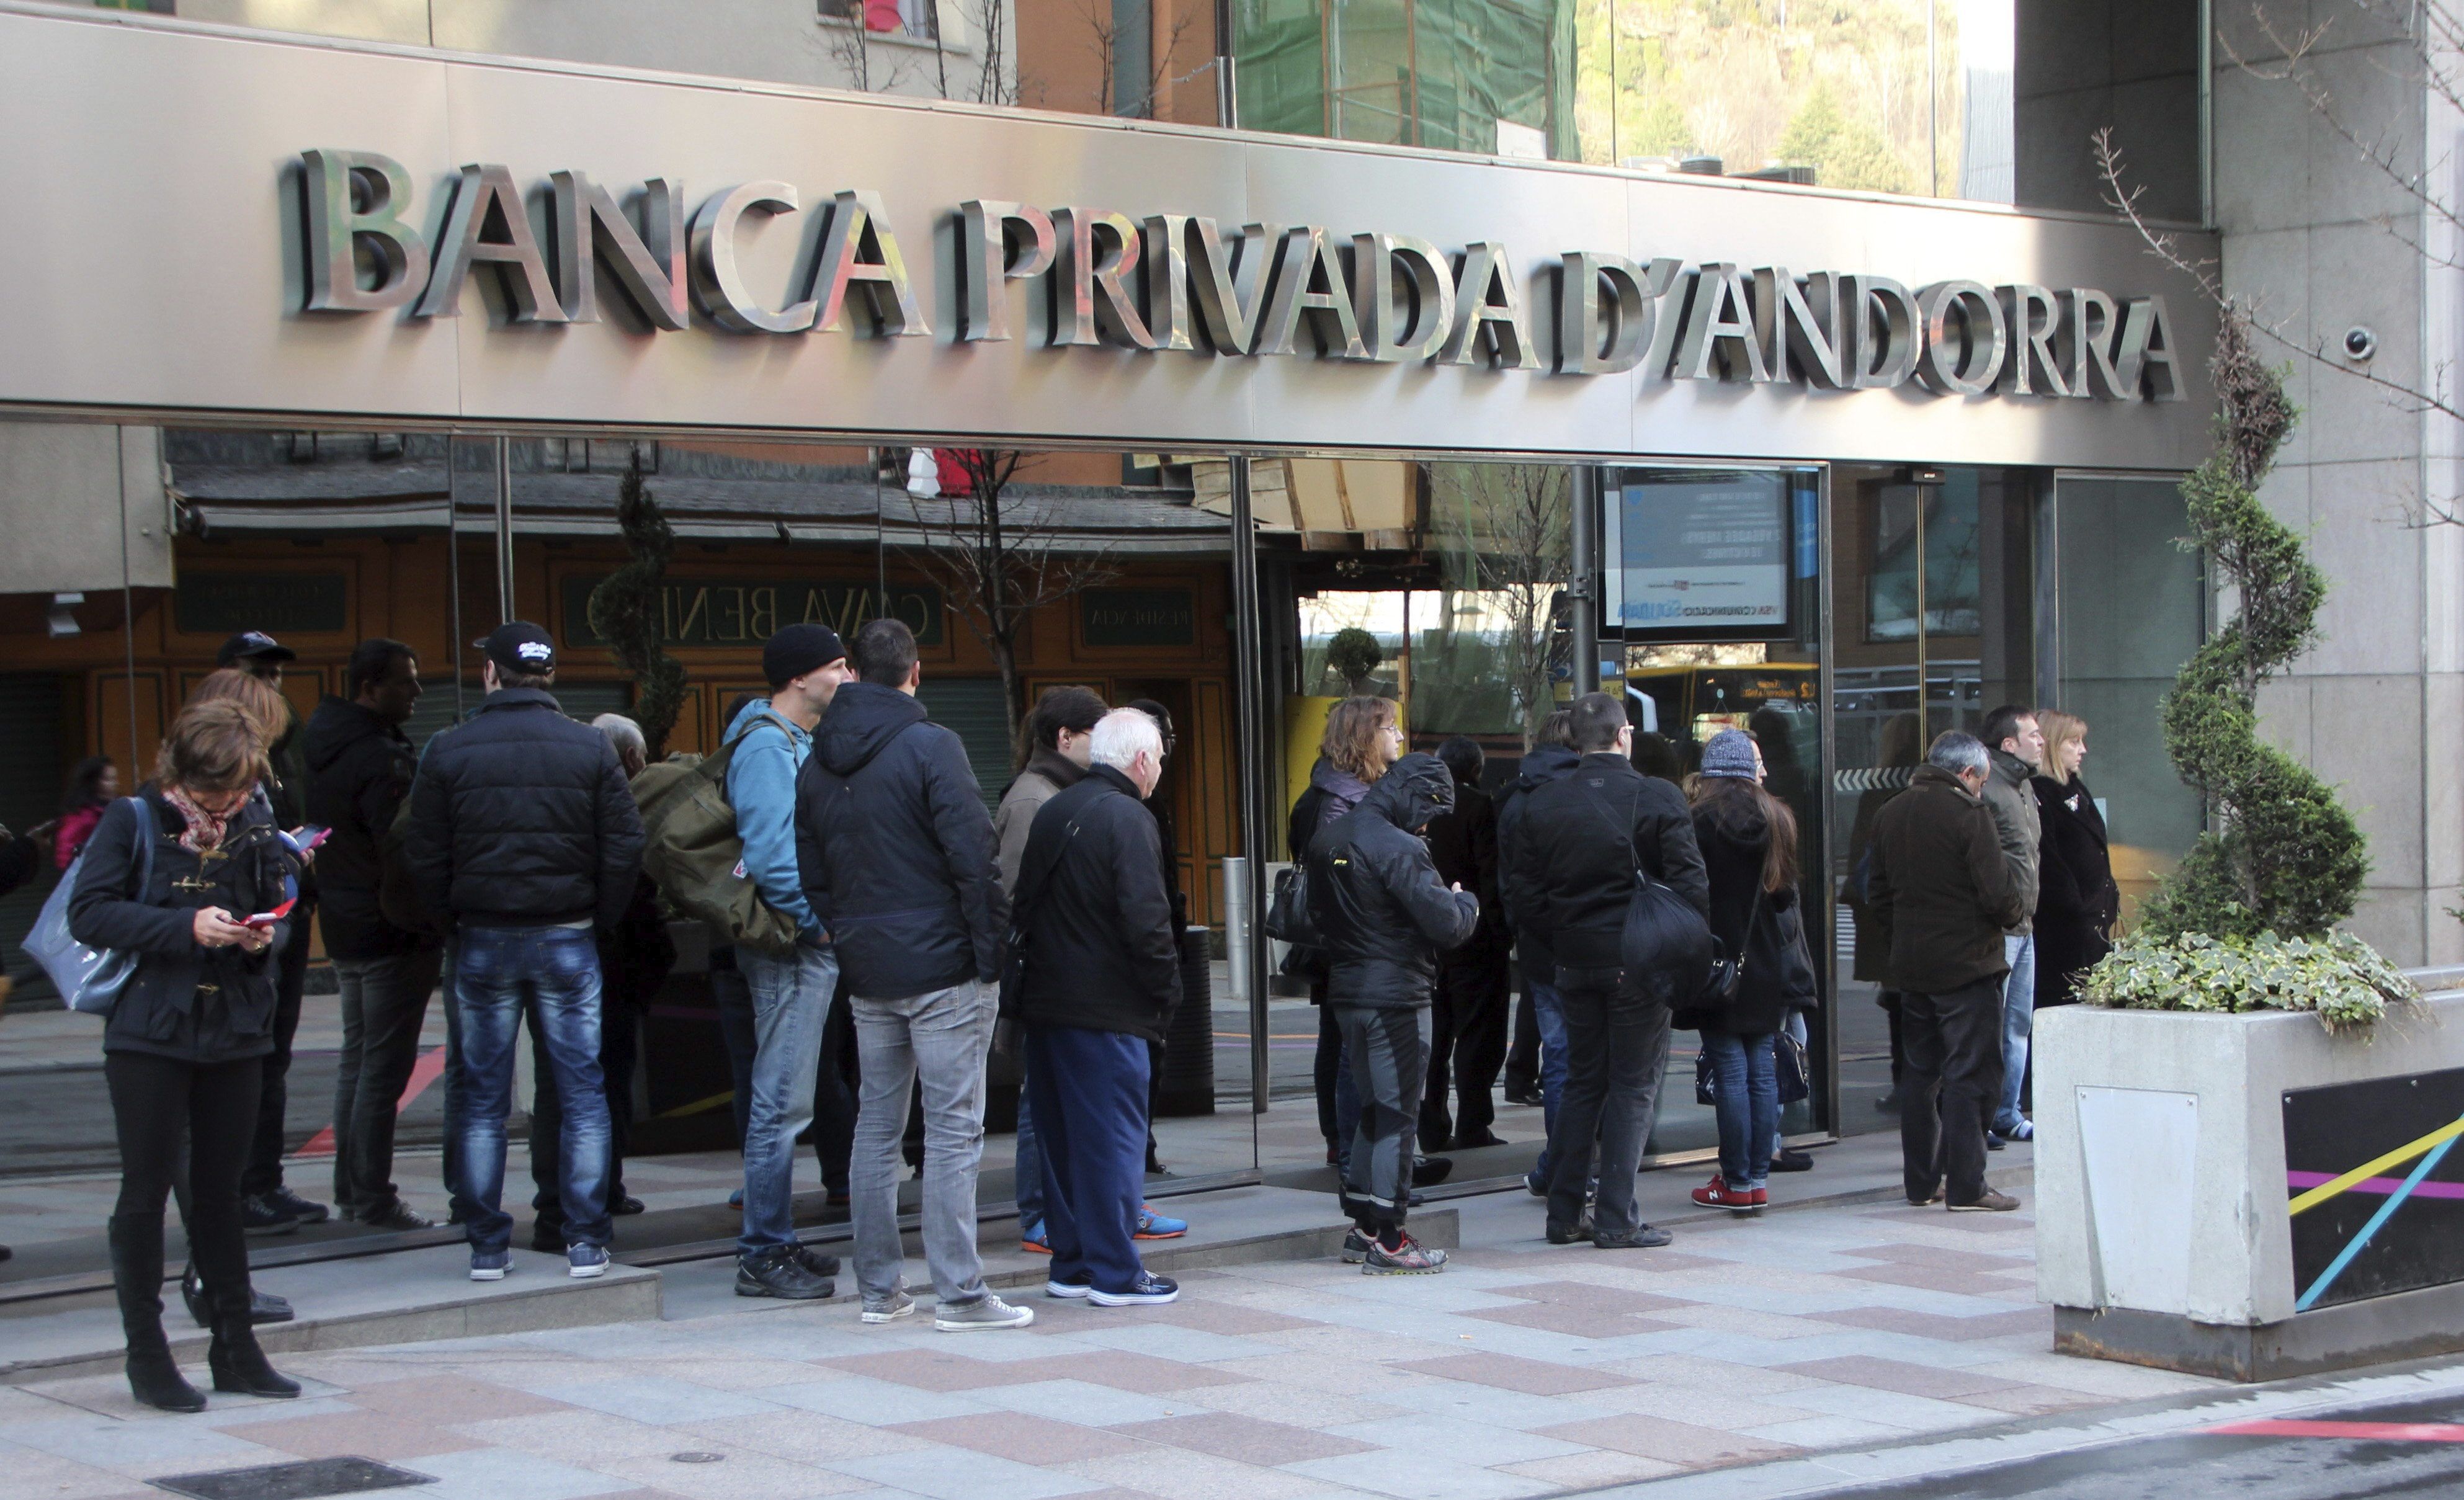 Rajoy, instigador de les coaccions a la banca andorrana